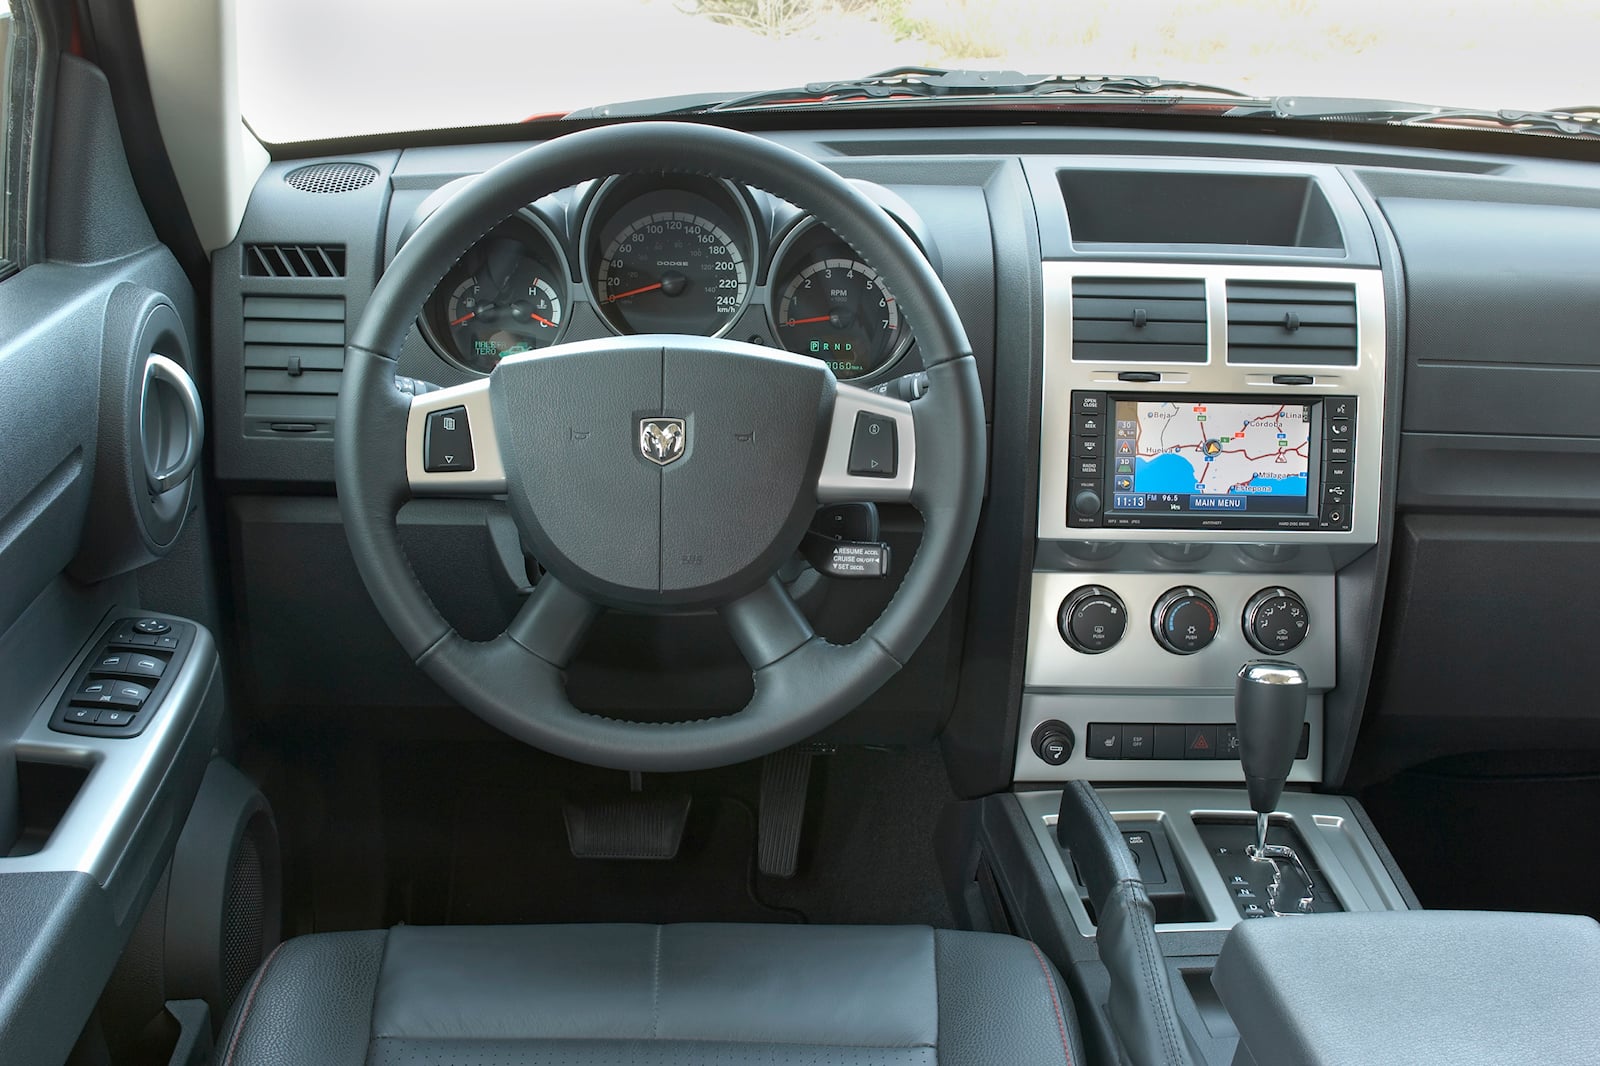 2008 Dodge Nitro Interior Photos | CarBuzz